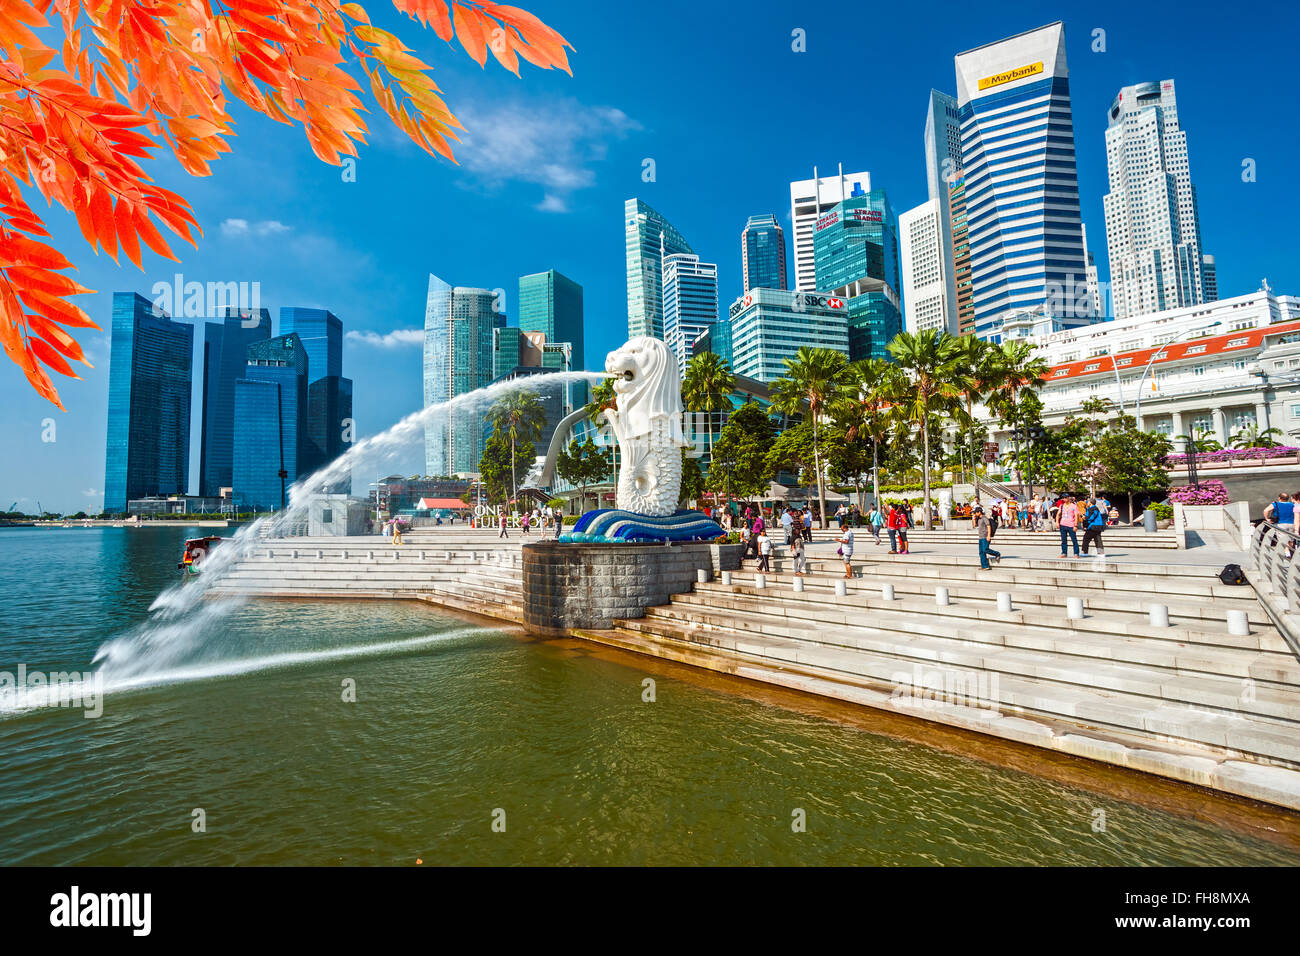 Singapur-März 19: The Merlion und das Marina Bay Sands Resort Hotel, angekündigt als der weltweit teuersten Standalone Casino p Stockfoto